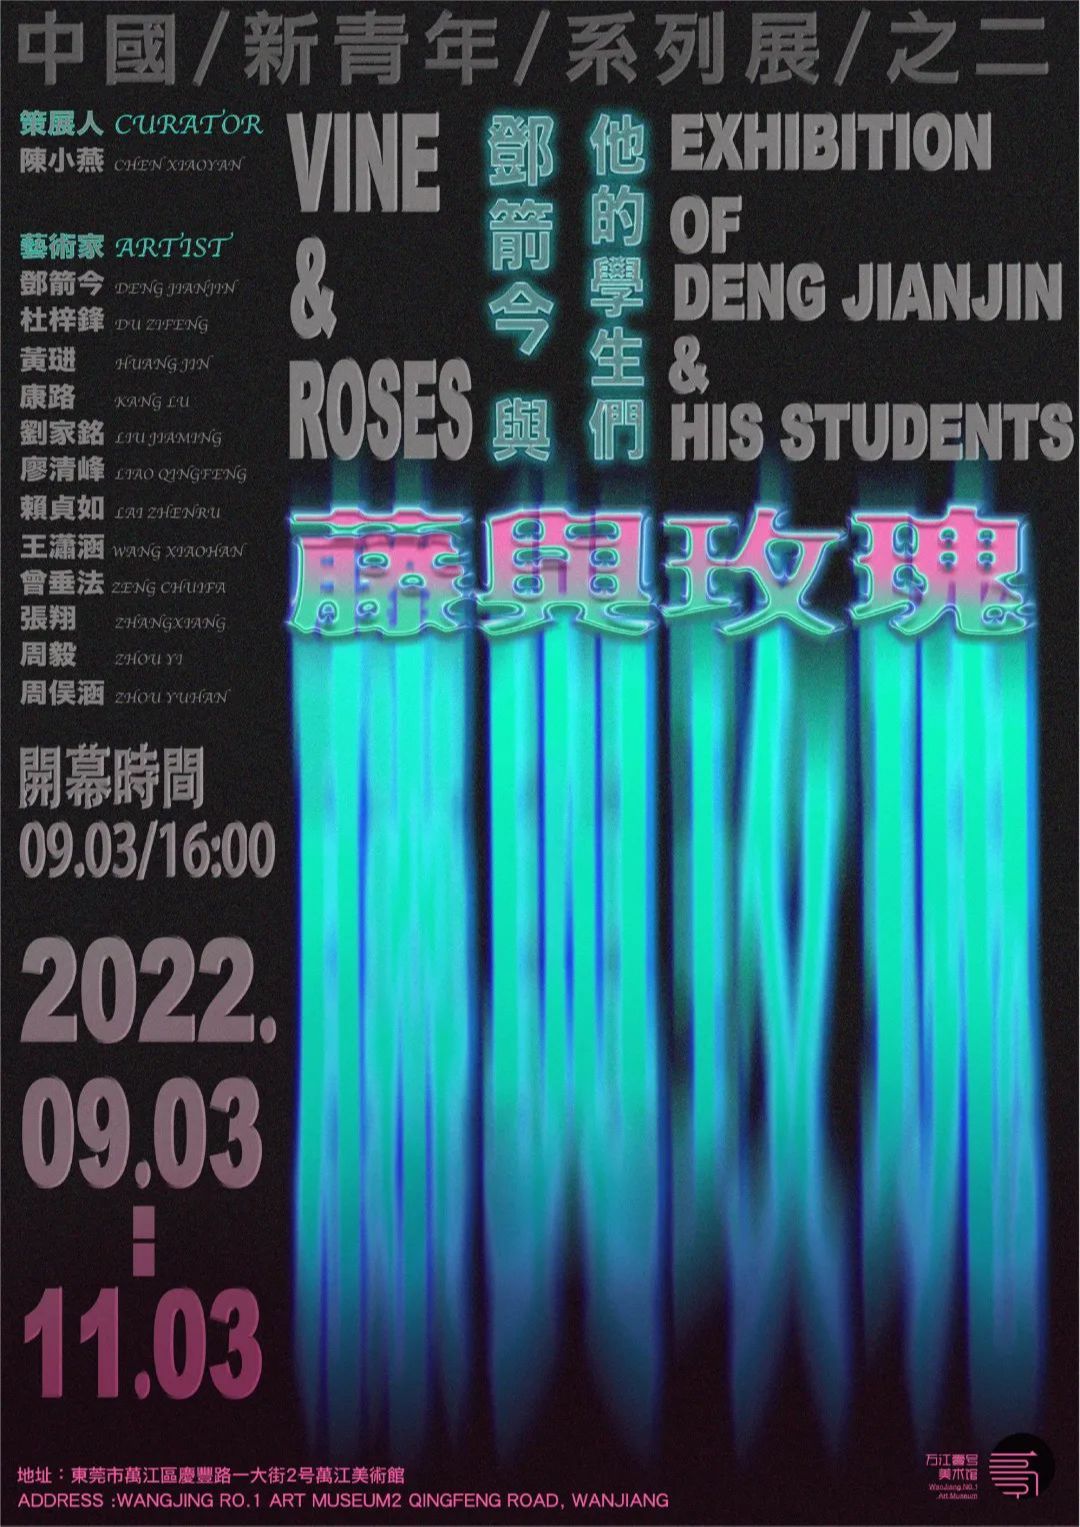 中国新青年系列展之二“藤与玫瑰”邓箭今与他的学生们